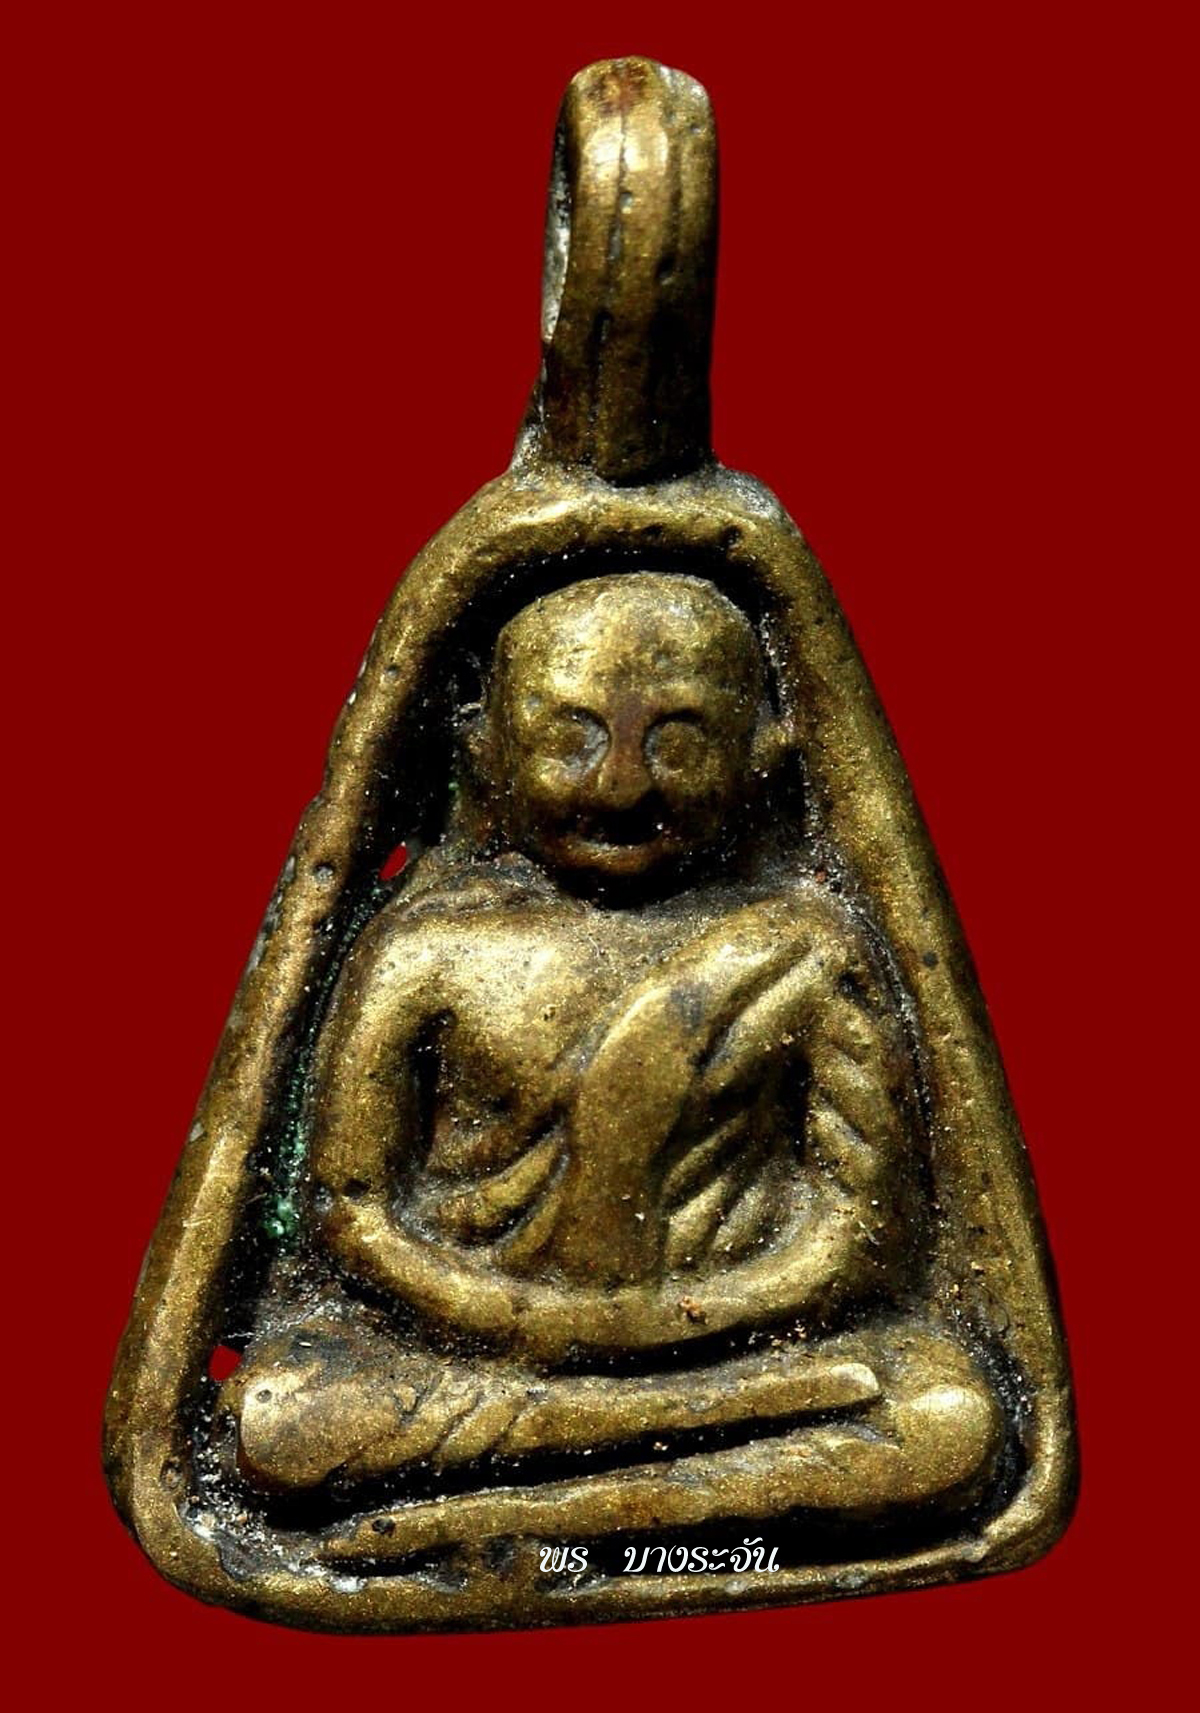 รูปหล่อหลวงพ่อเงินบางคลาน thai amulet phra lp ngern wat bangklan pim job thai amulet 銮菩银 财佛, 鑾菩銀 大師,